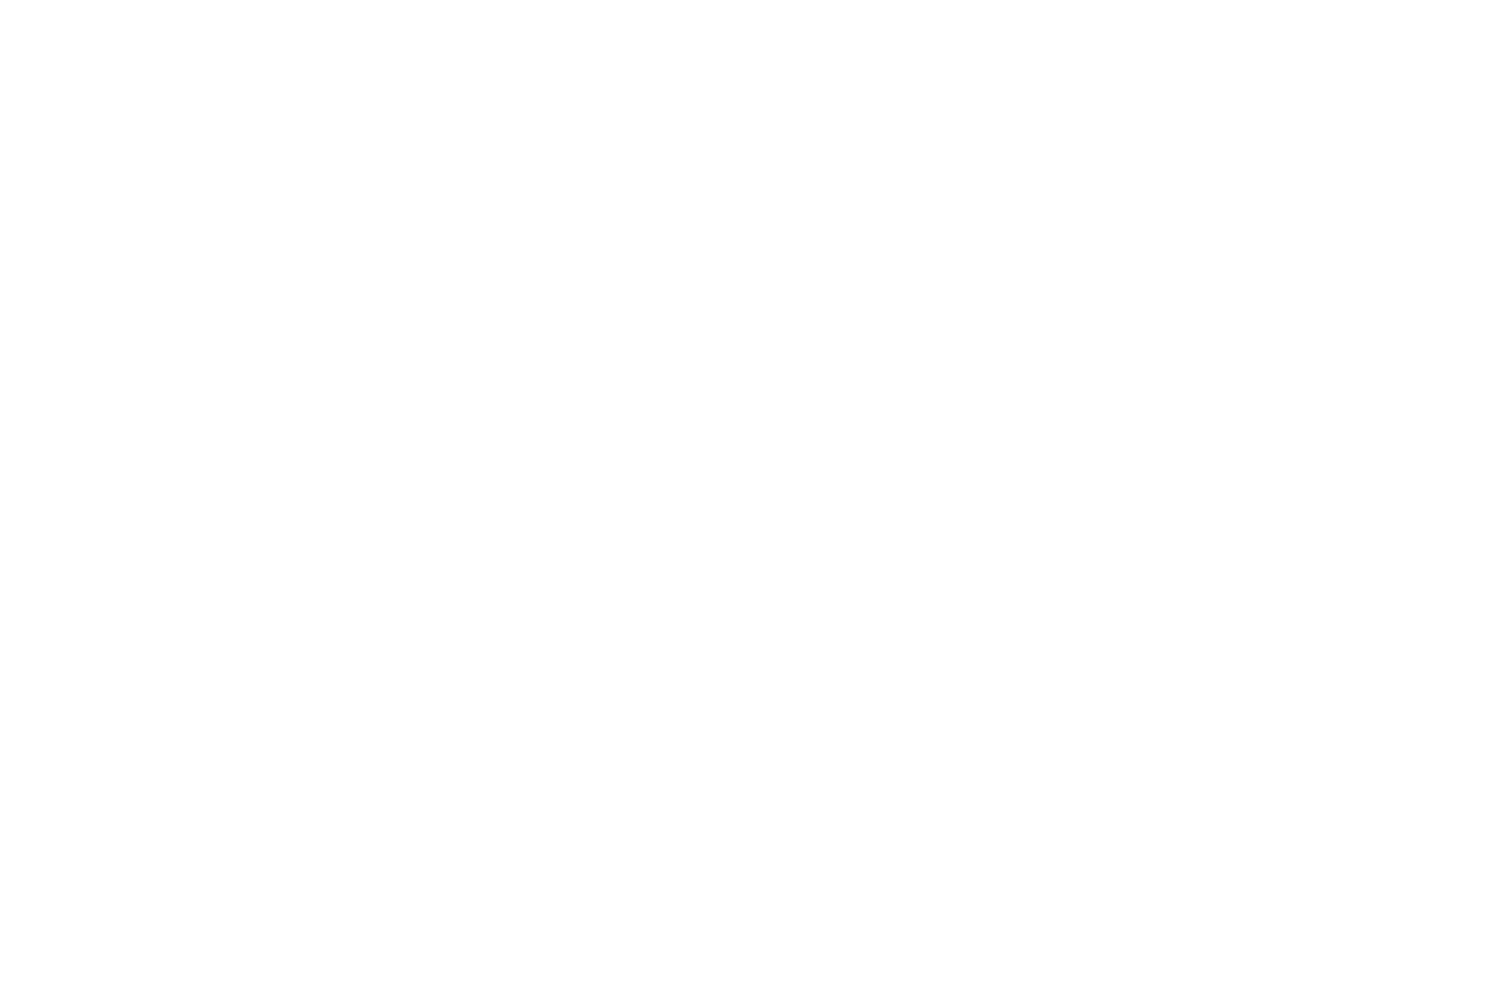 Dr. Gerardo Garmendia